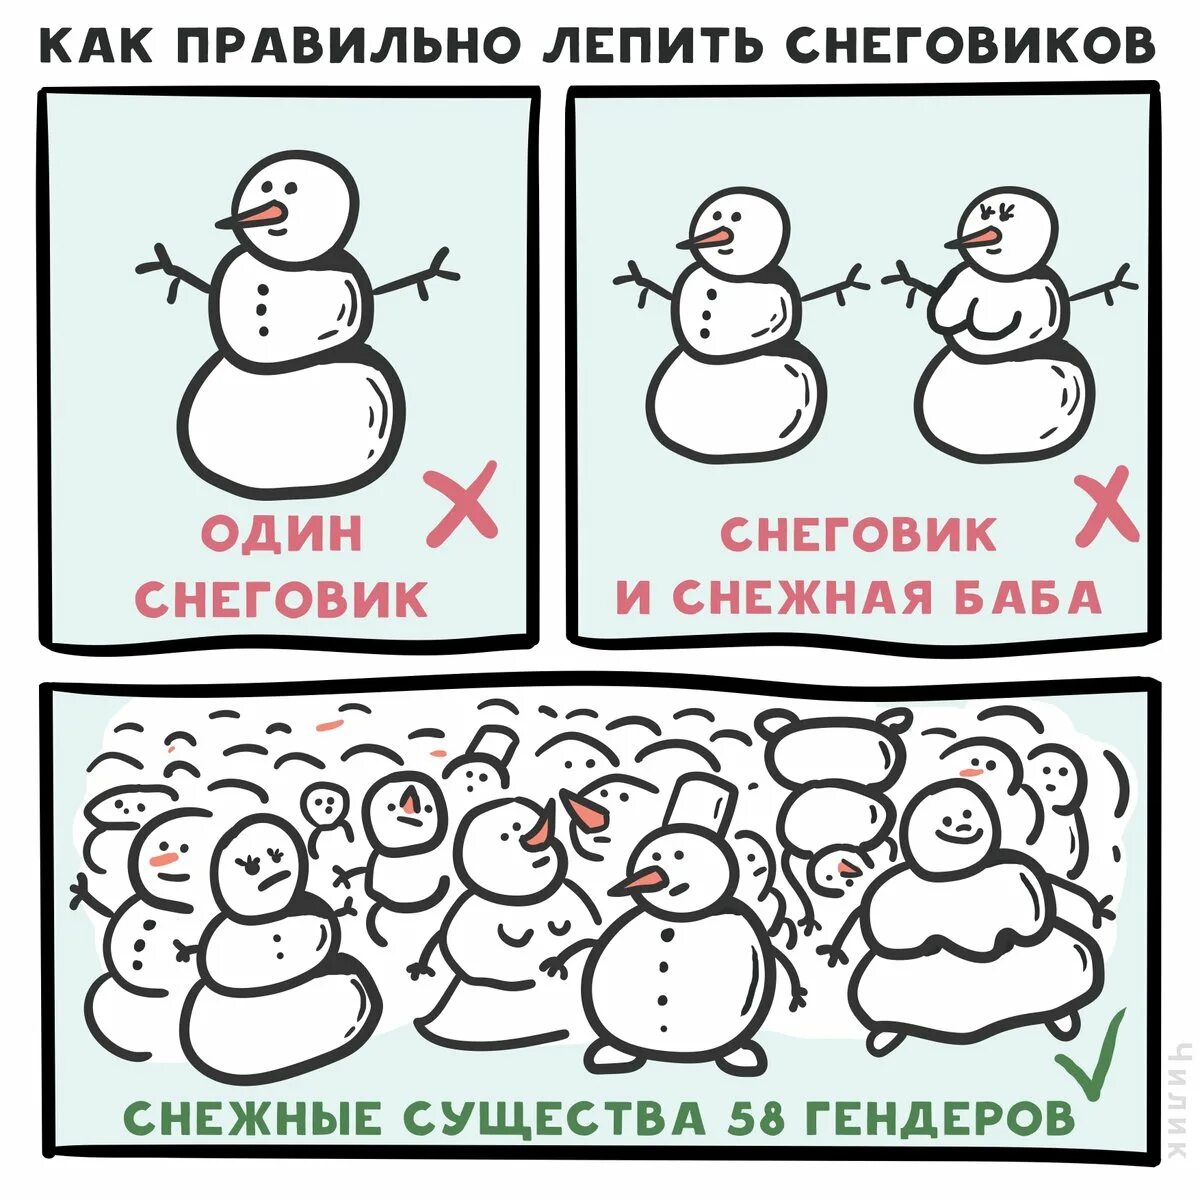 Шутки про снеговика. Комикс про снеговика. Снеговик прикол. Снеговикт мемы. Ты меня любишь лепишь